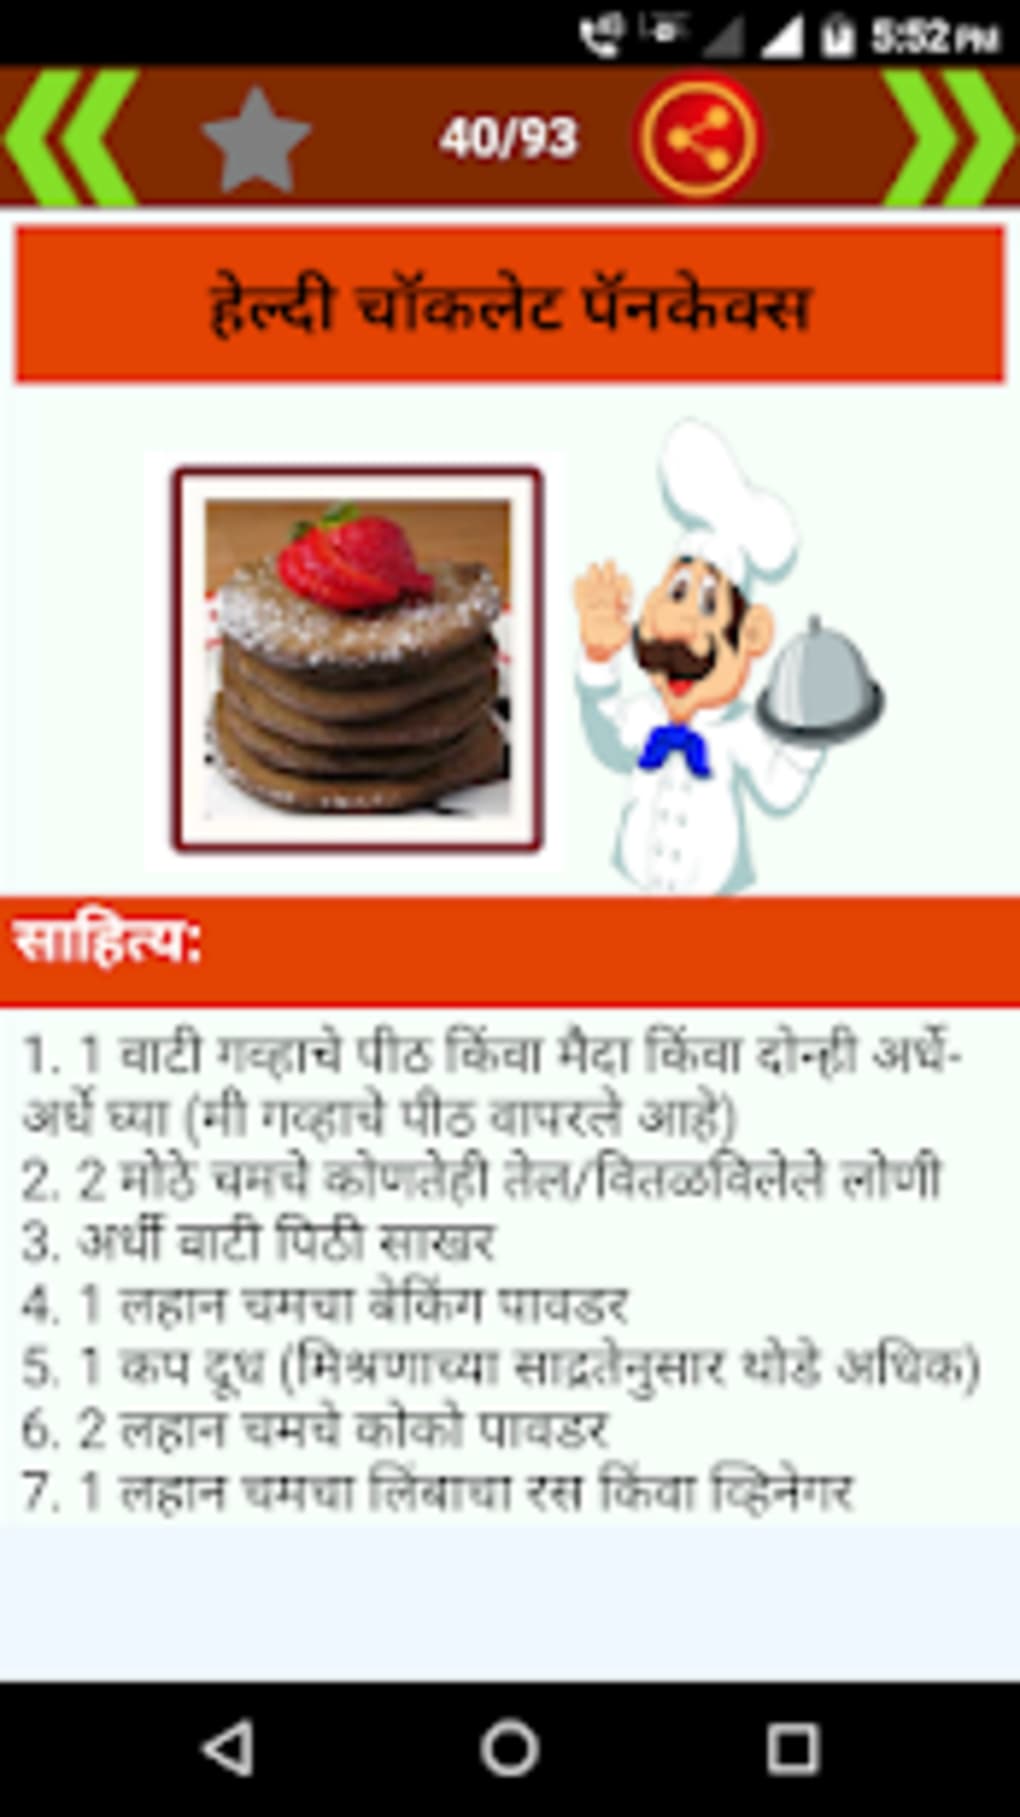 बिस्किटचा केक,बिस्कीटचा केक - biscuit-cake - Maharashtra Times